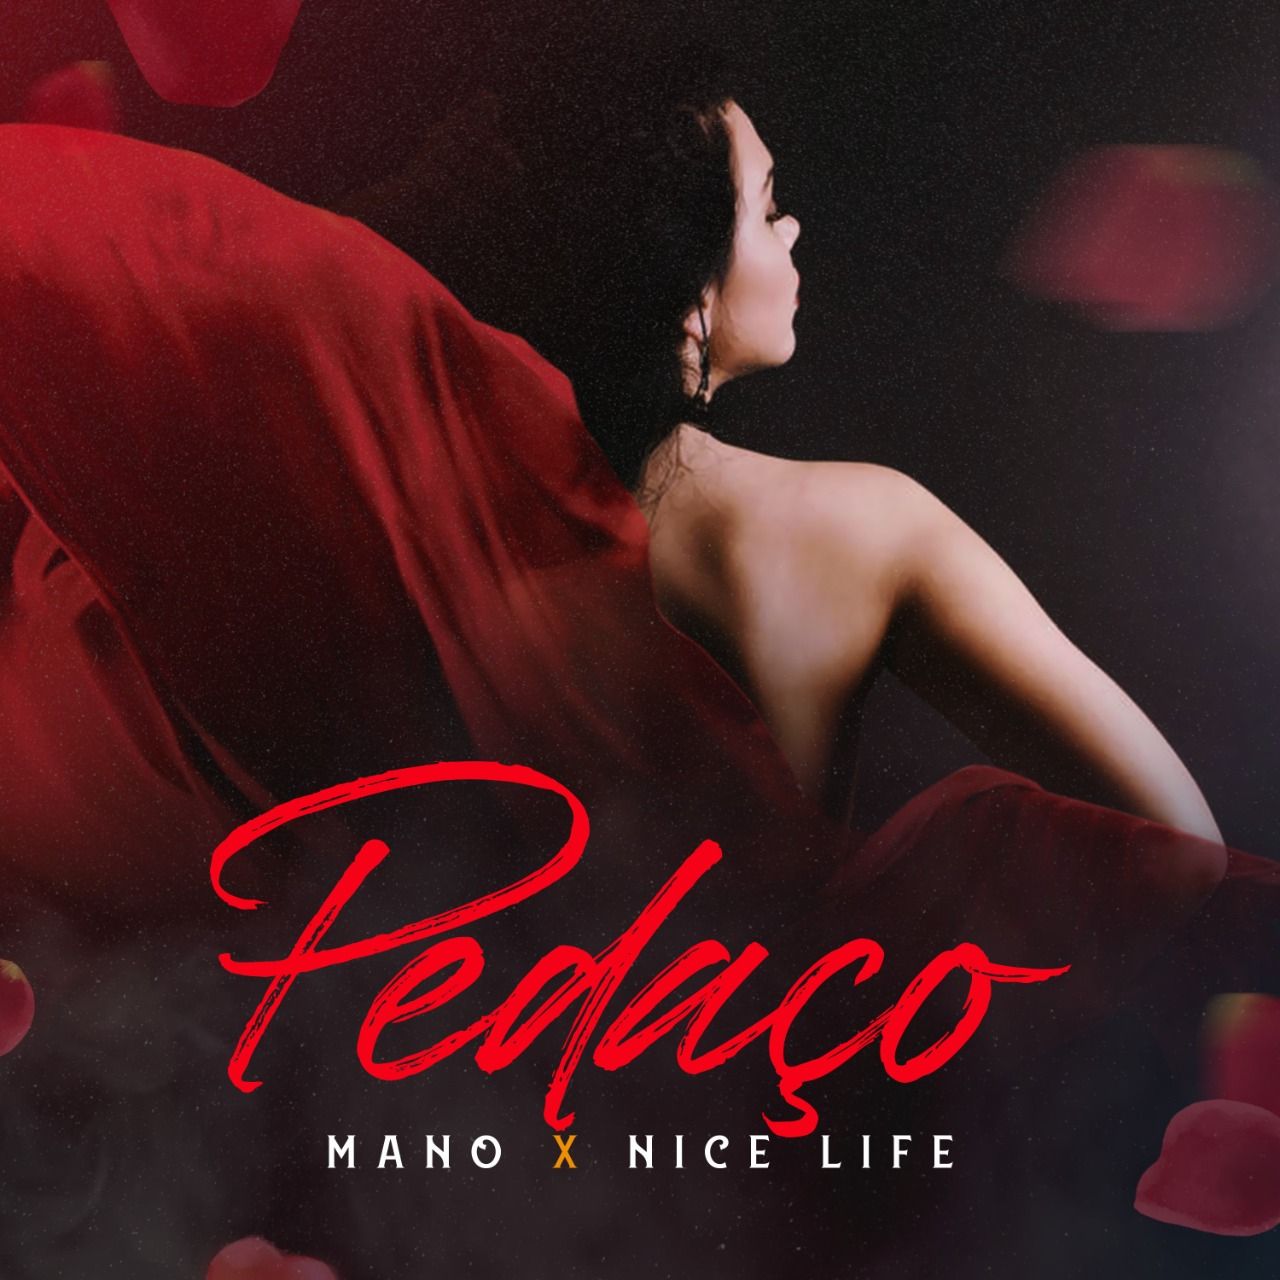 Preuzimanje datoteka Mano X Nice Life - Pedaco